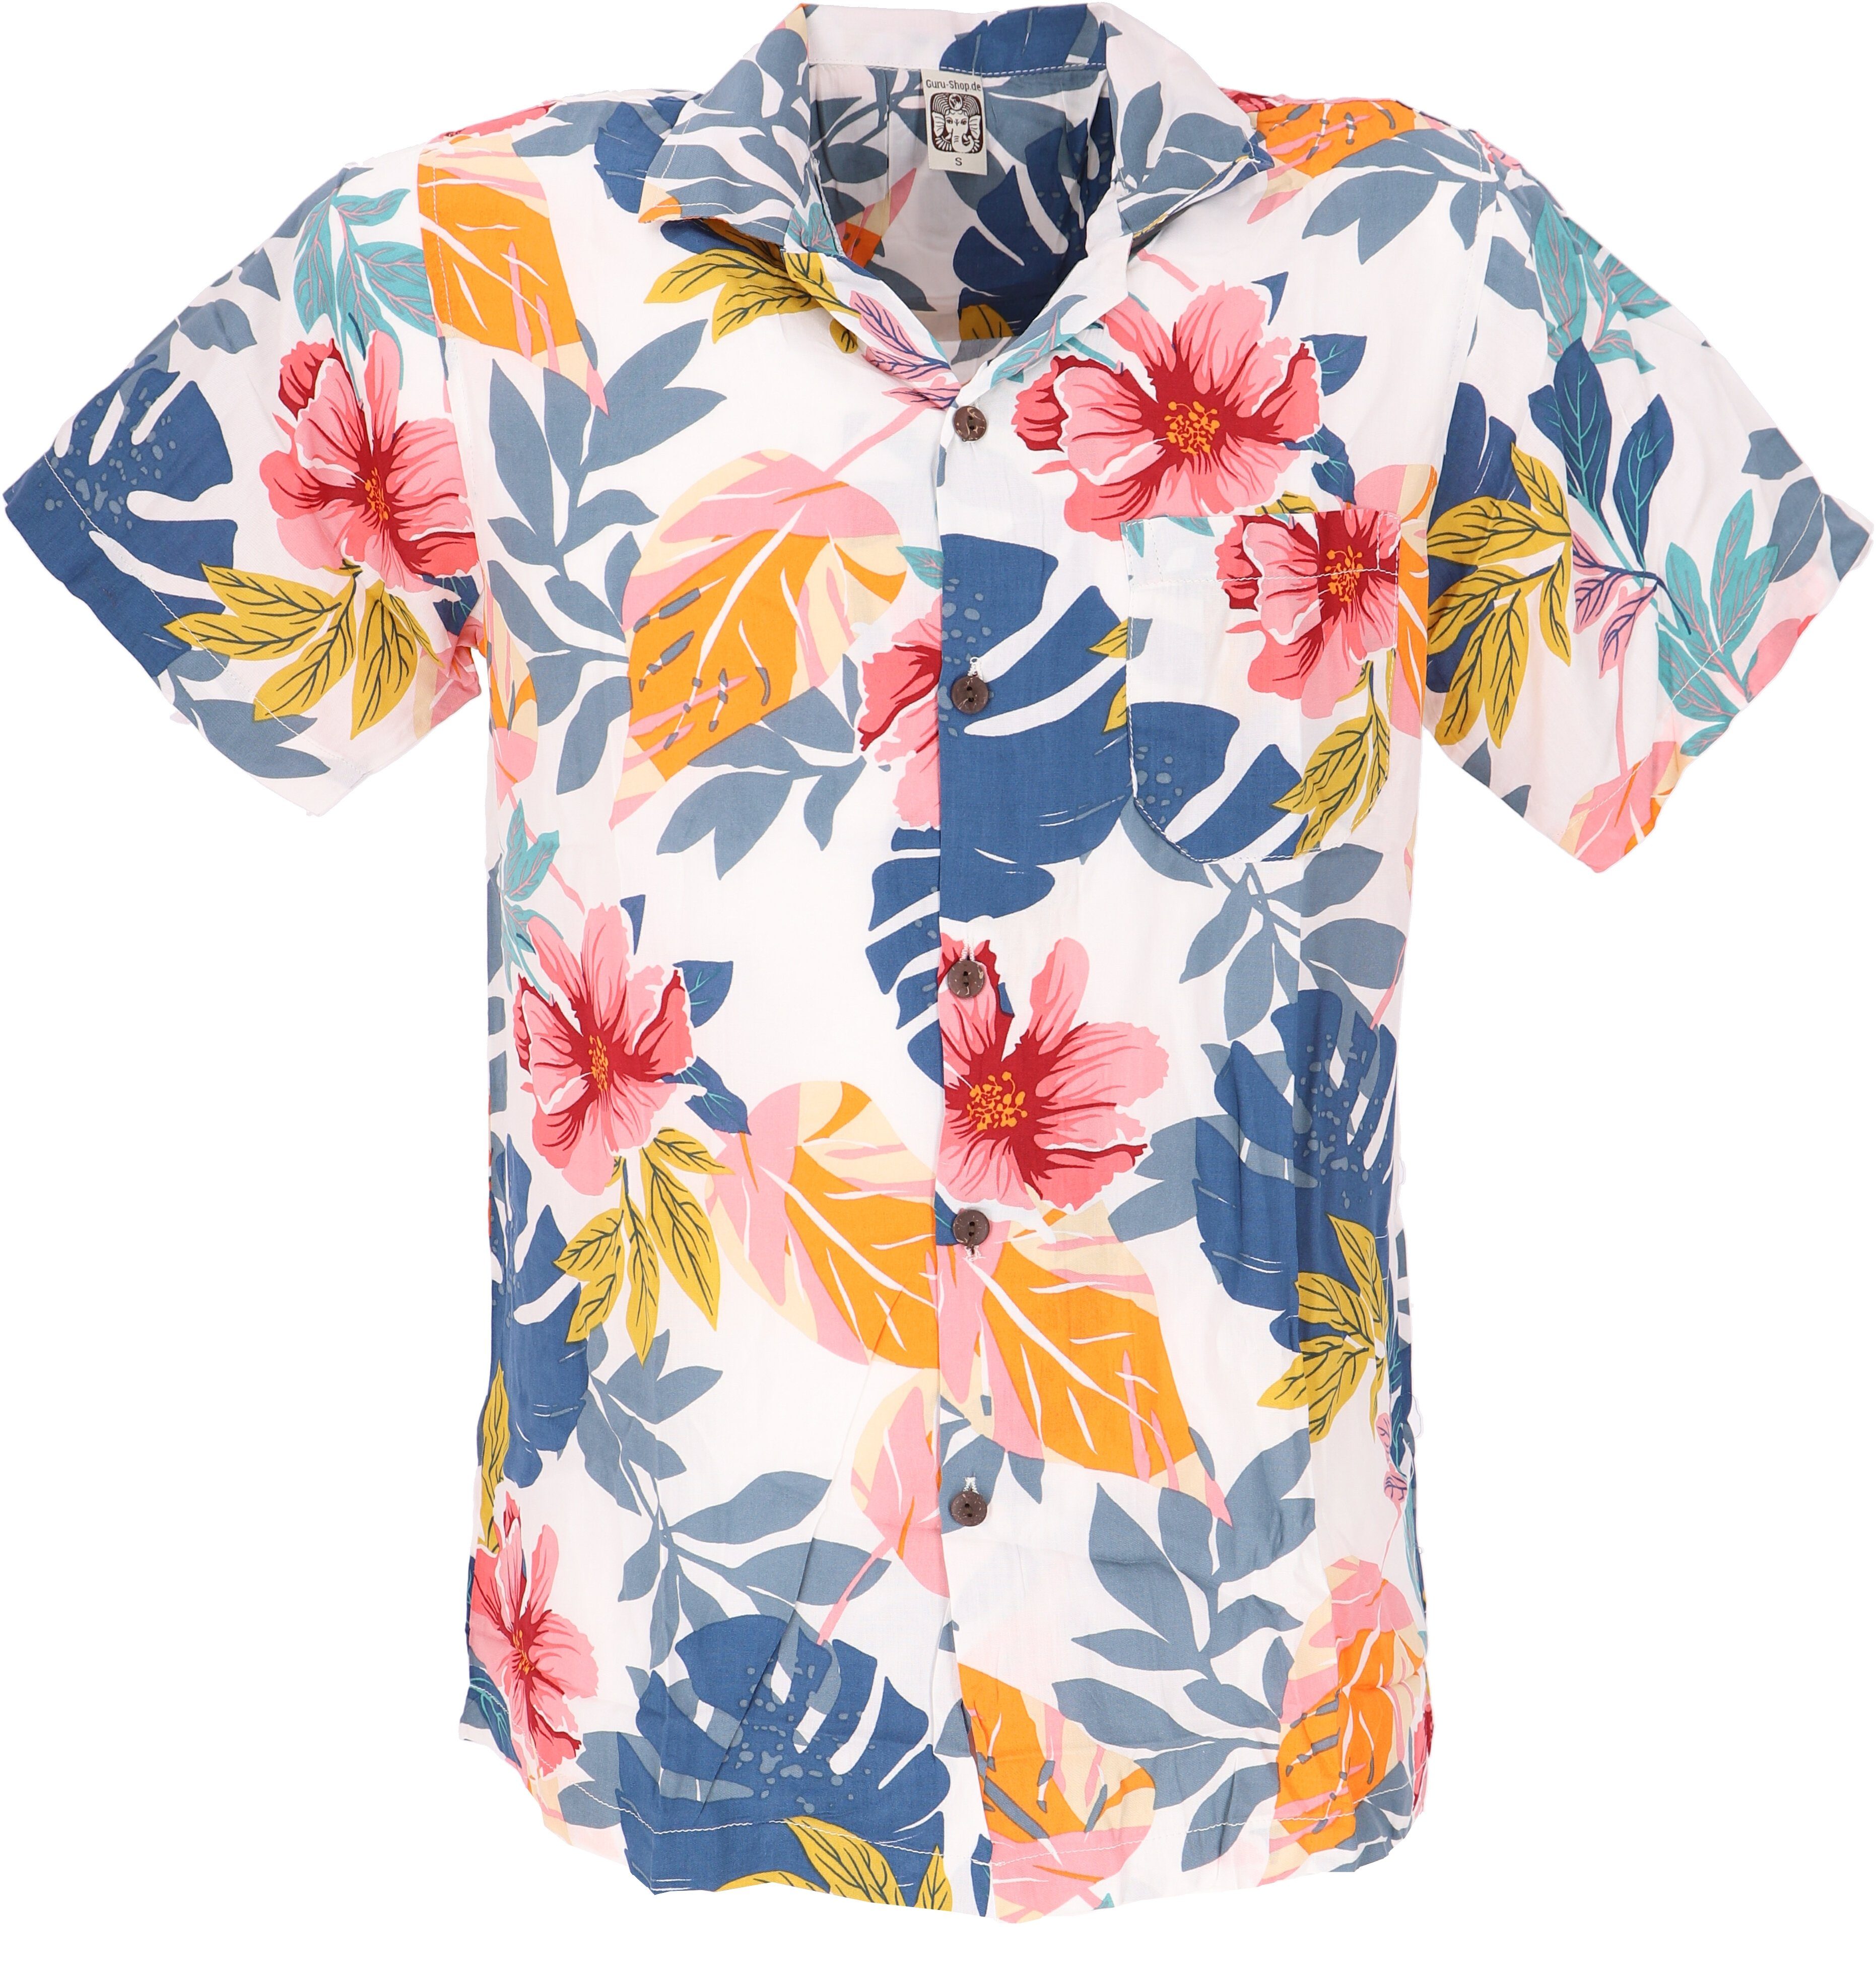 Guru-Shop Hemd & Shirt Hawaihemd, Hippiehemd Kurzarm, Herrenhemd mit.. Hippie, Ethno Style, alternative Bekleidung